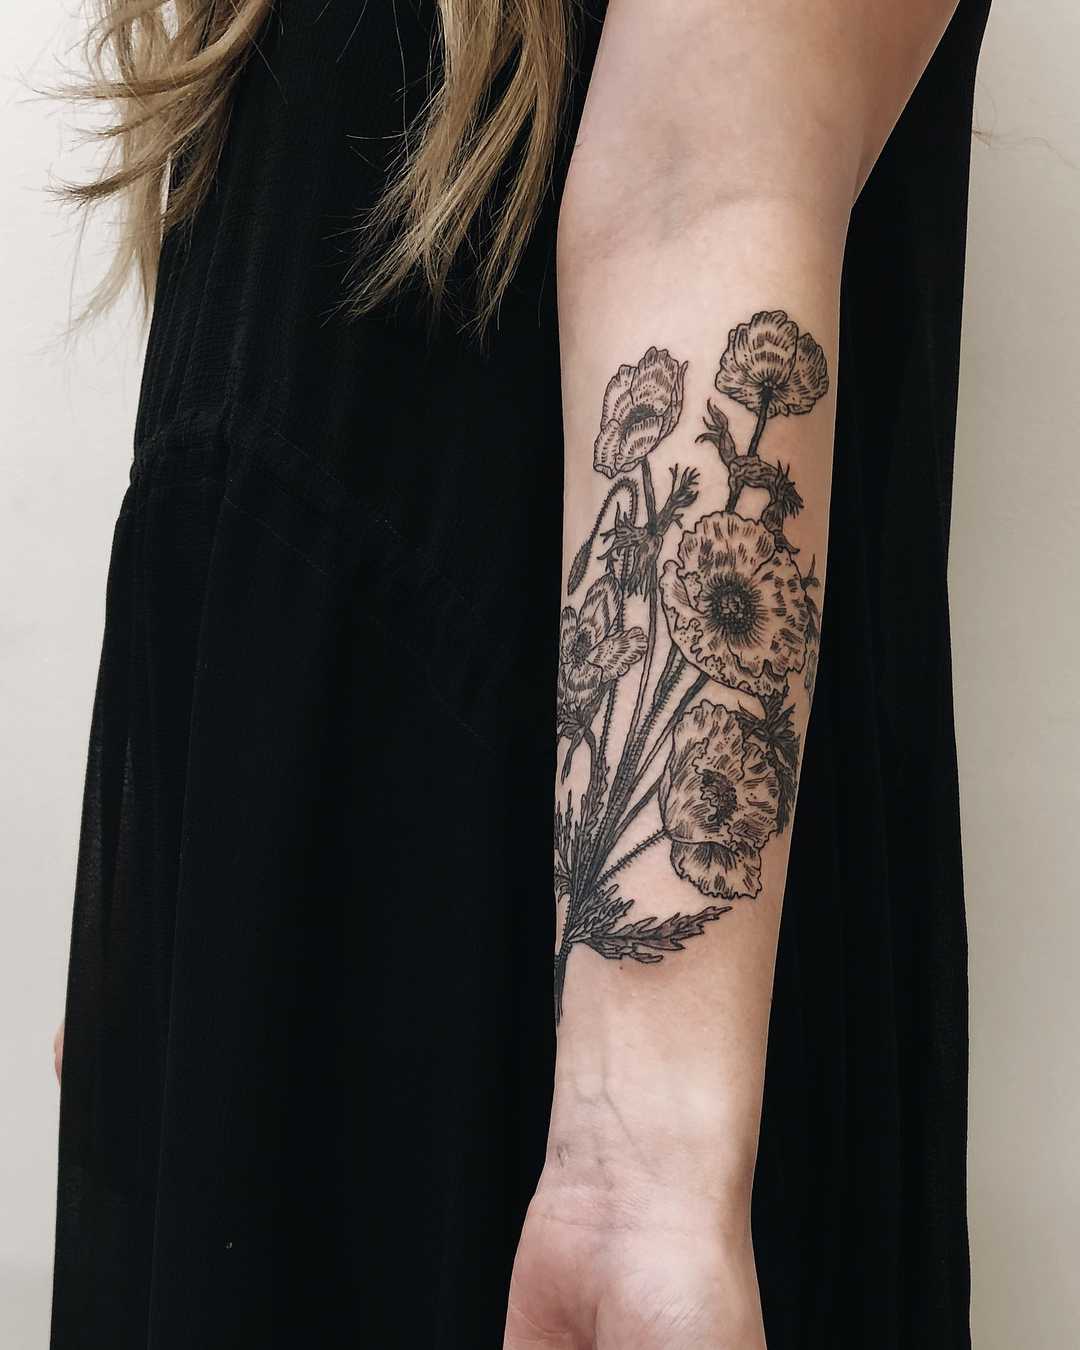 Poppy Anemone tattoo